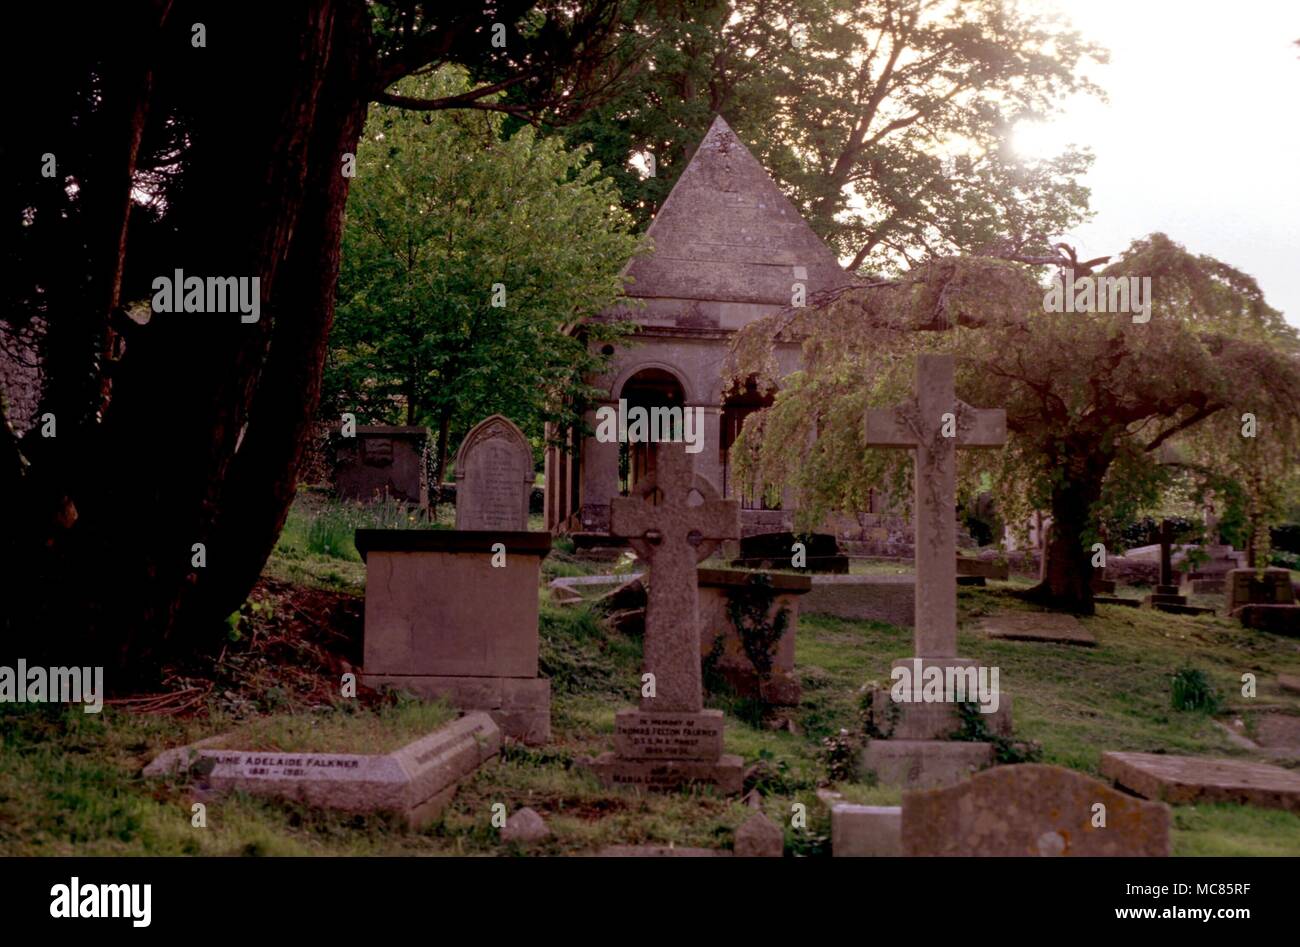 Friedhof Pyramidical Mausoleum in Claverton Bäume - Eibe, Kirsche. Grabsteine Stockfoto